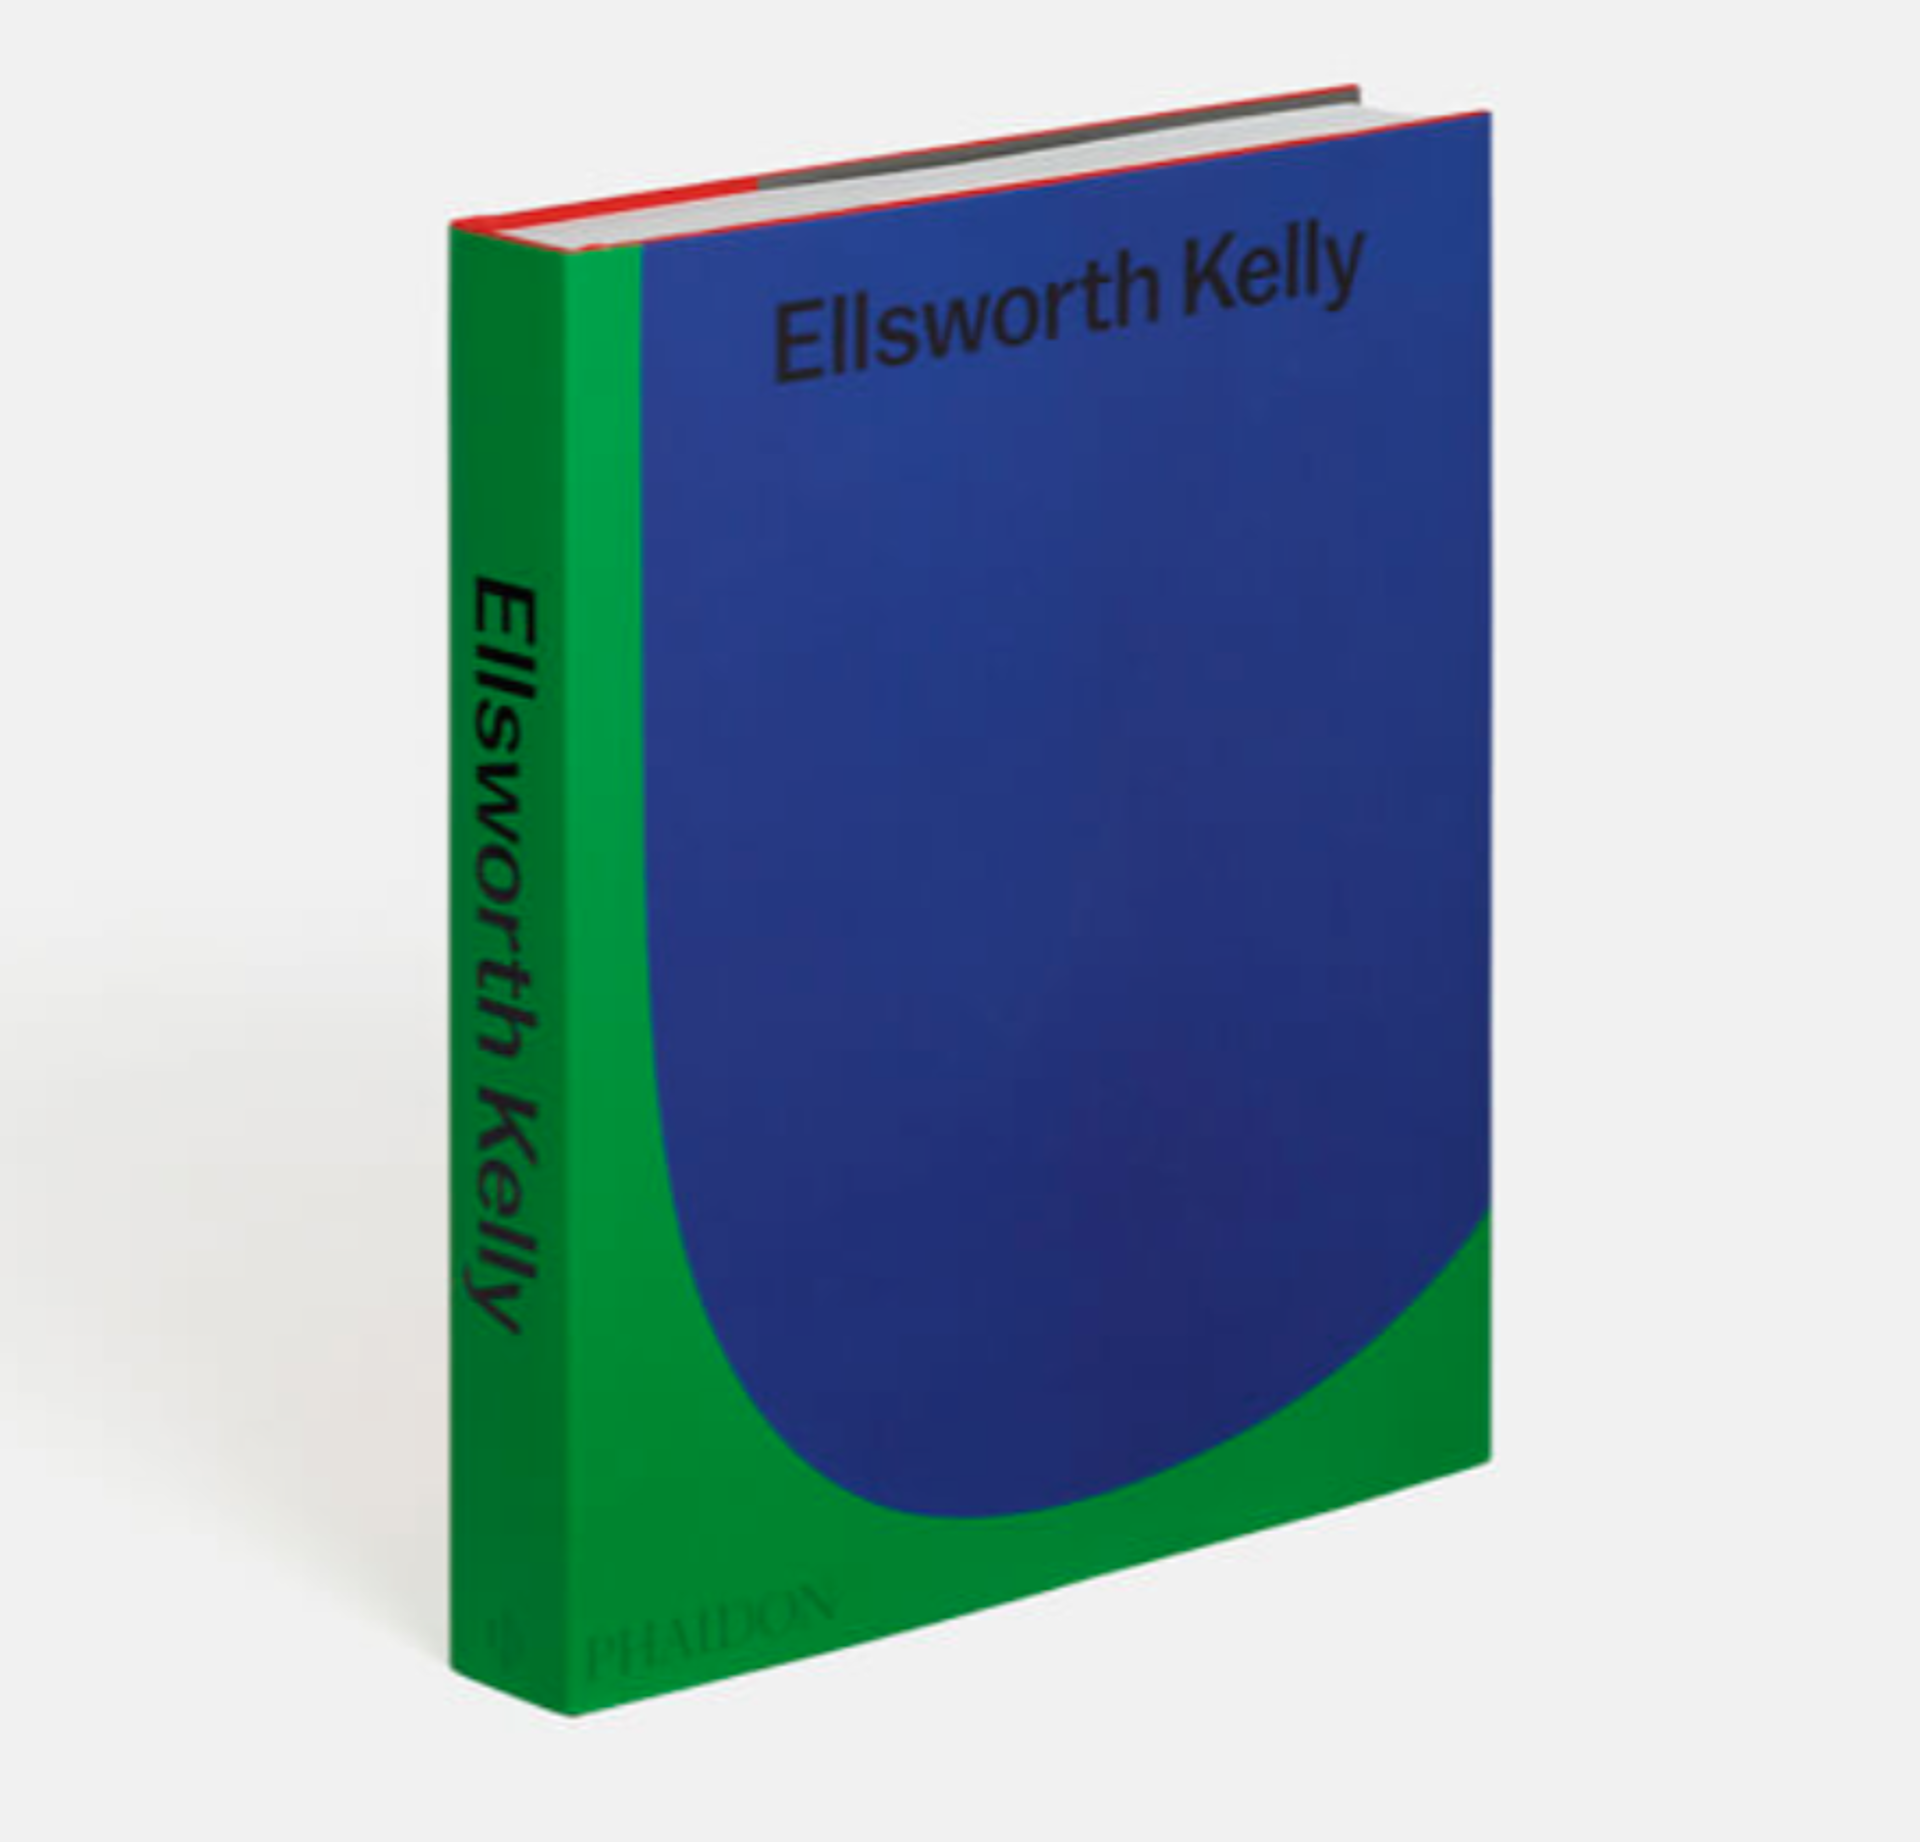 Ellsworth Kelly by Ellsworth Kelly